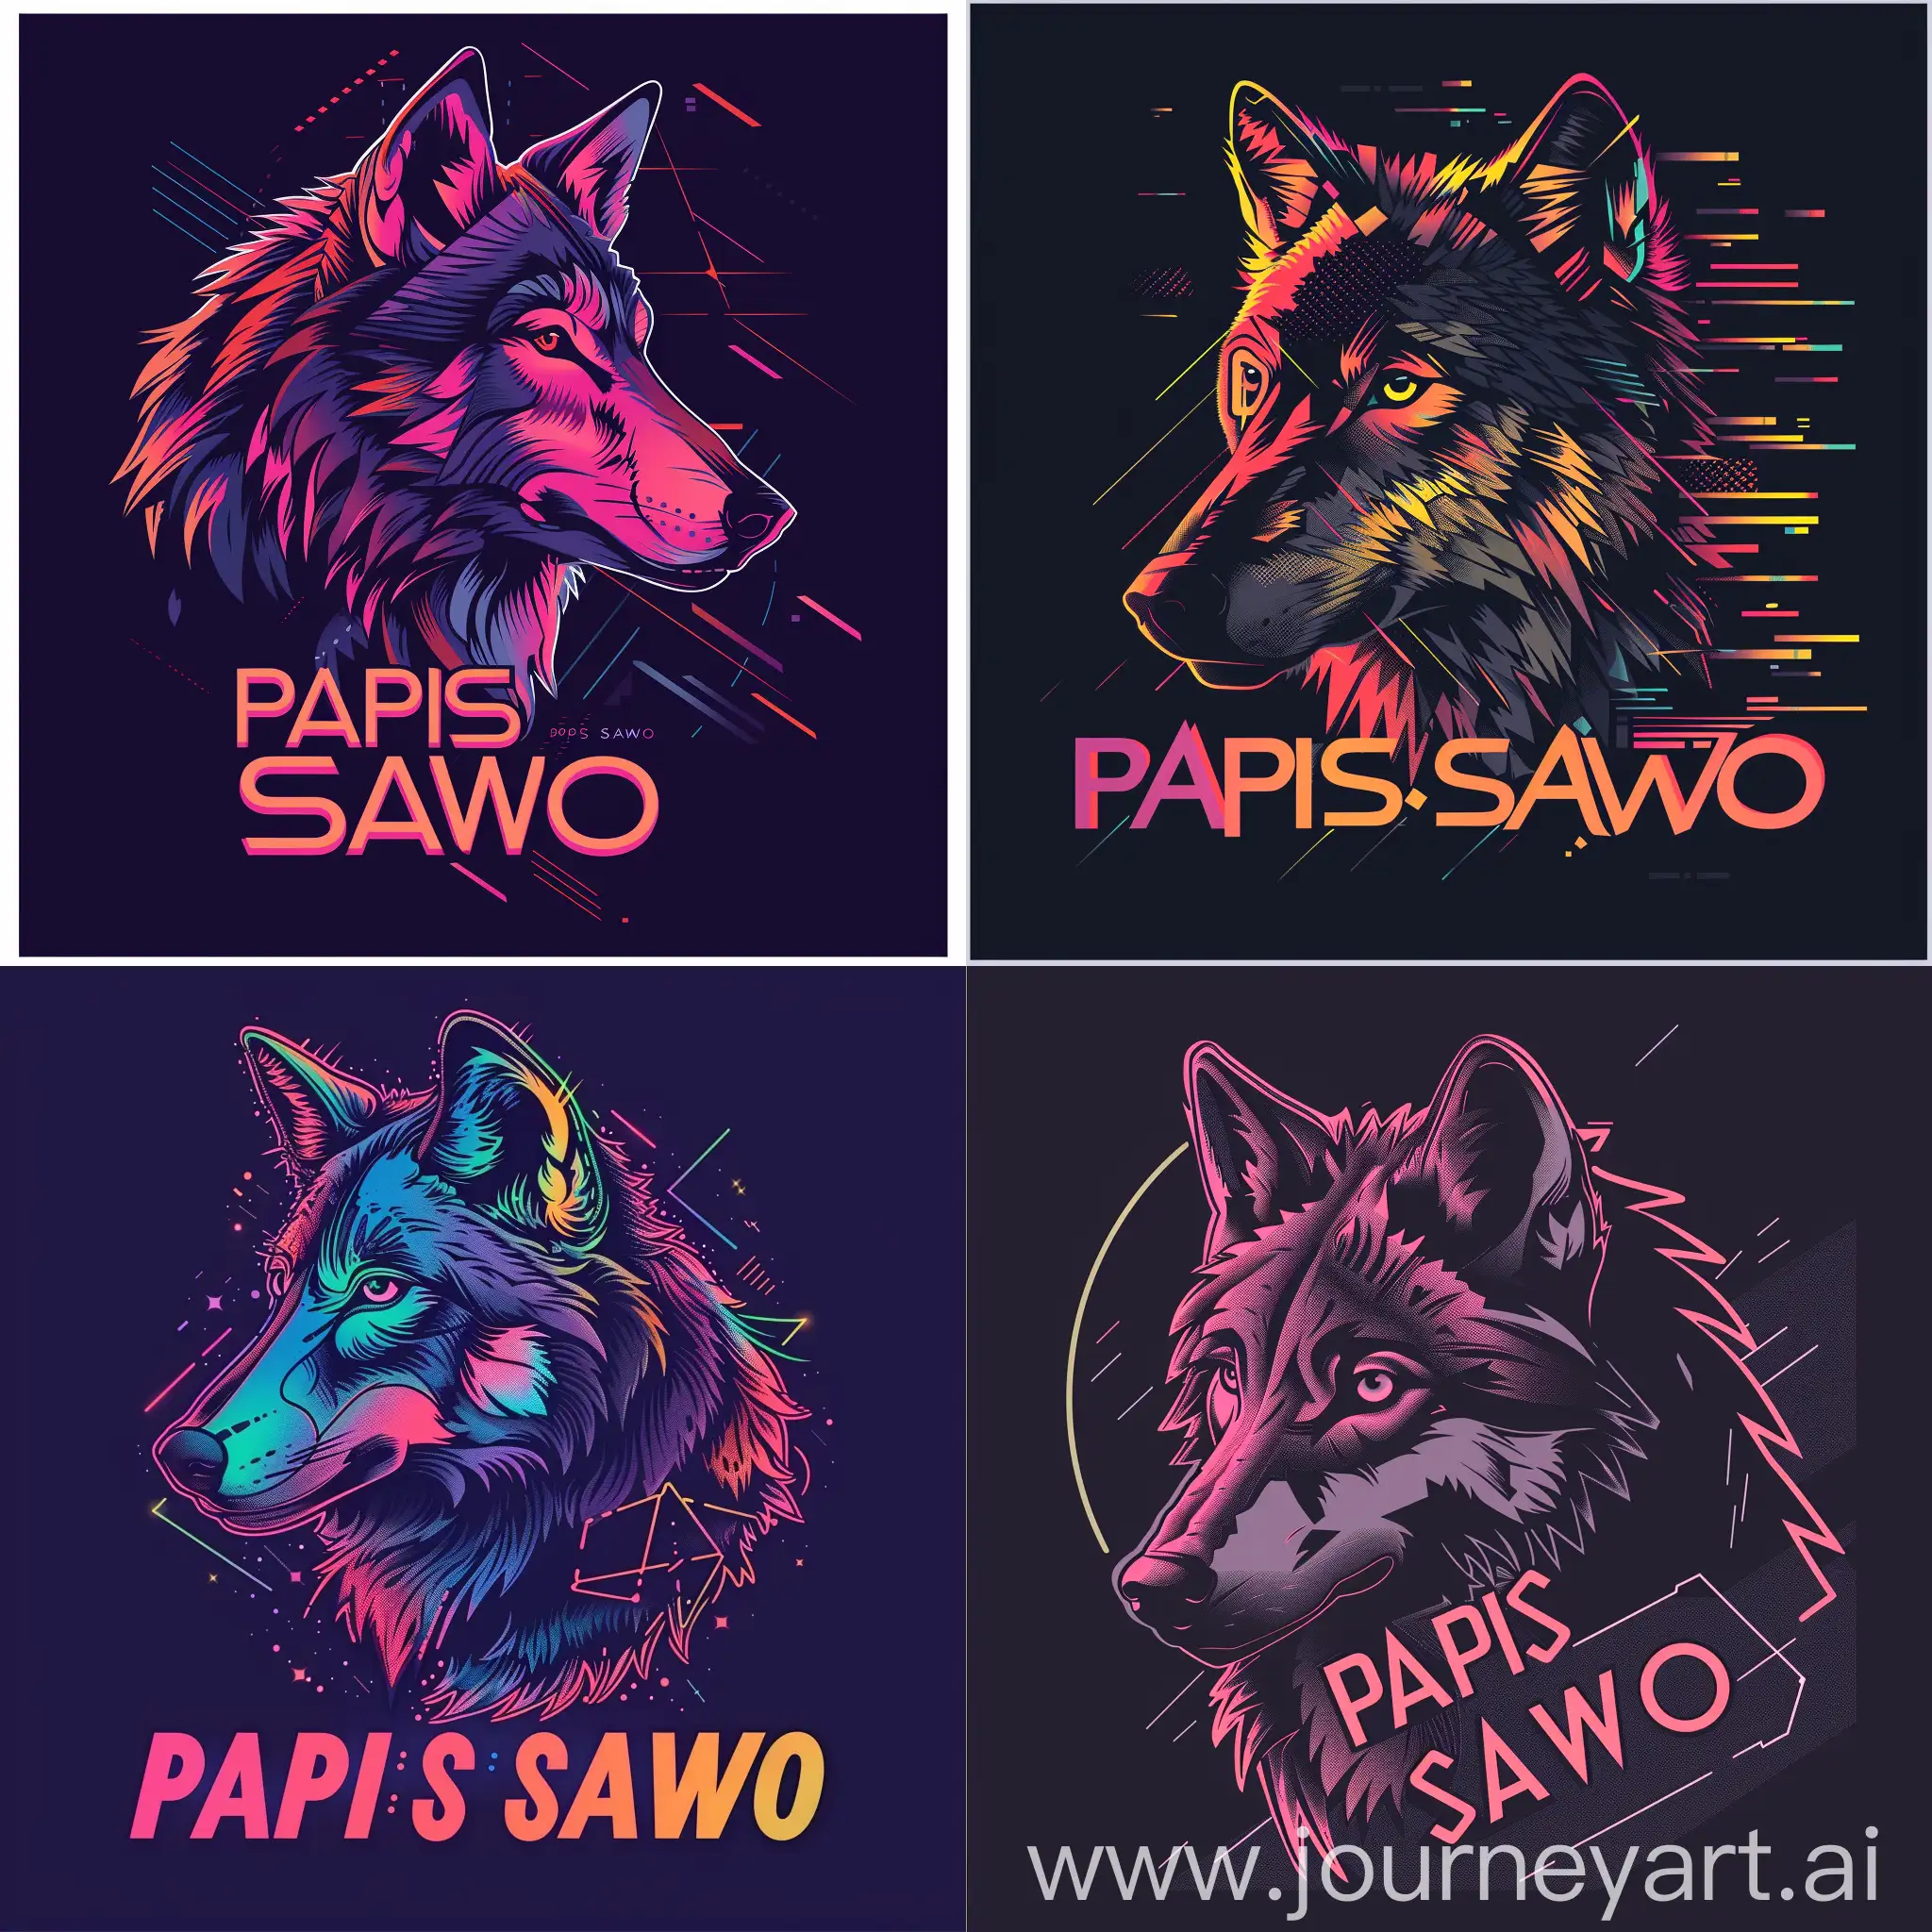 Логотип со словами "PAPIS SAWO", стилизованный волк в техно стиле, волк смотрит в сторону в стилизованном графическом виде с геометрическими формами и цифровыми элементами, чтобы подчеркнуть техно-стиль логотипа, неоновый шрифт для надписи "PAPIS SAWO", добавит эффектного контраста и привлечет внимание к логотипу, --s 150